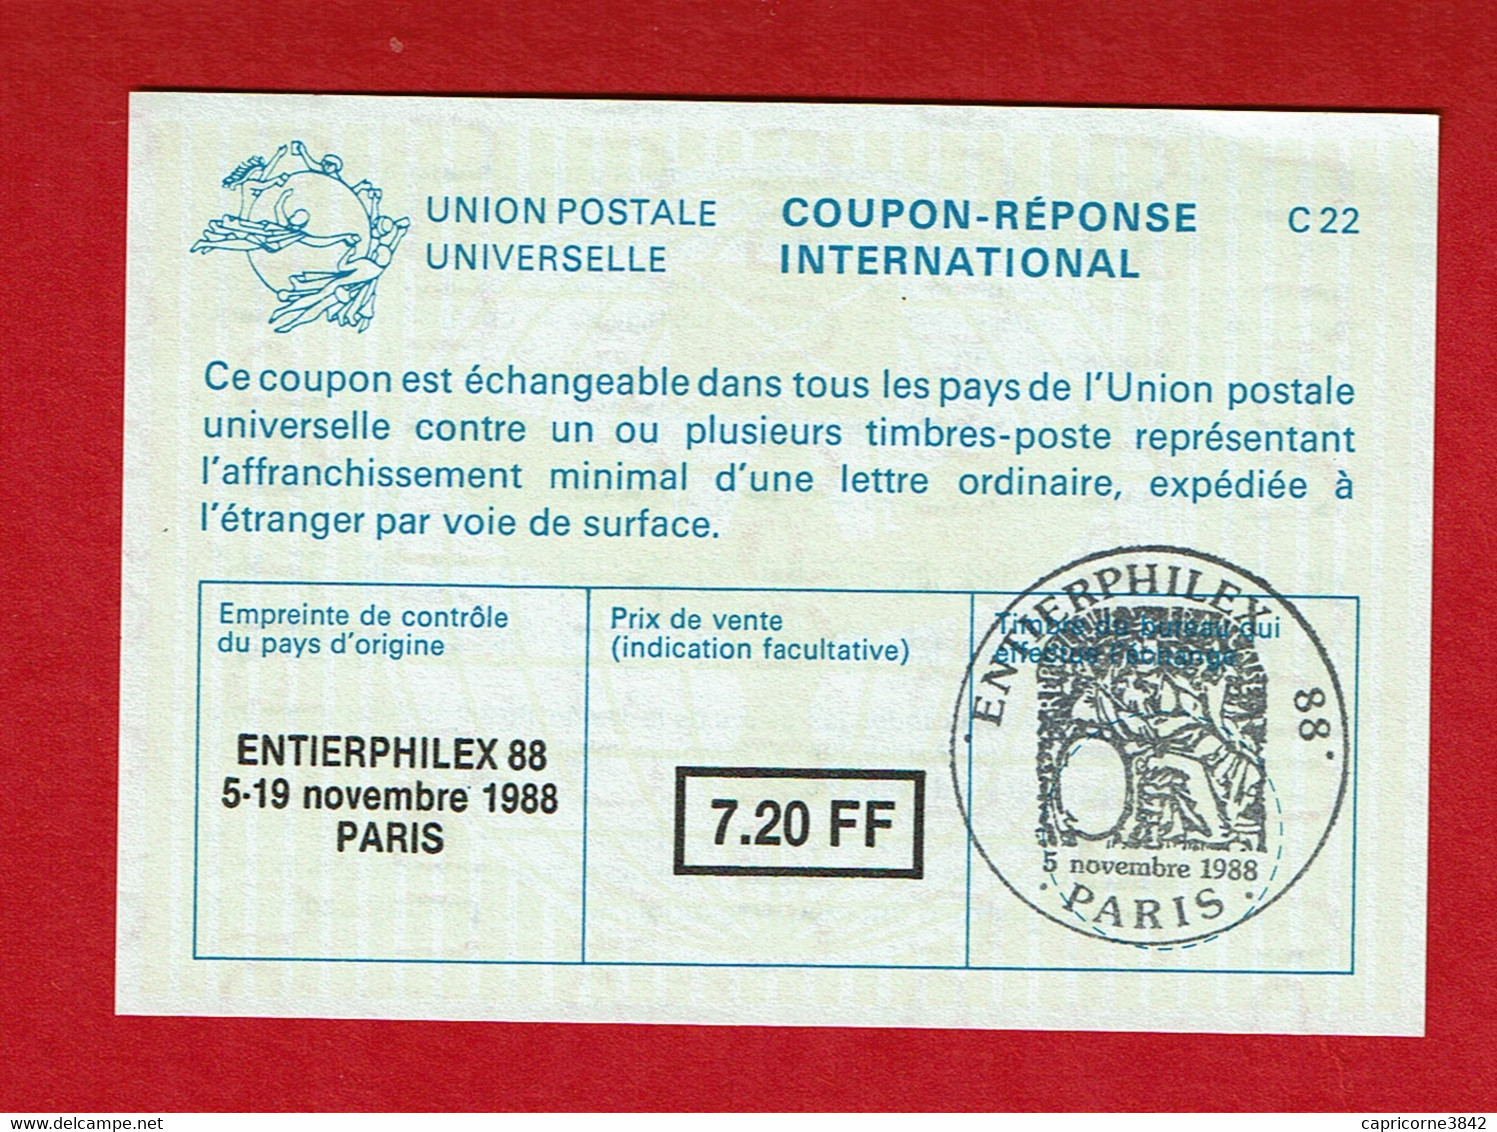 1988 - COUPON REPONSE INTERNATIONAL - Cachet Temporaire "ENTIERPHILEX -88" - Coupons-réponse